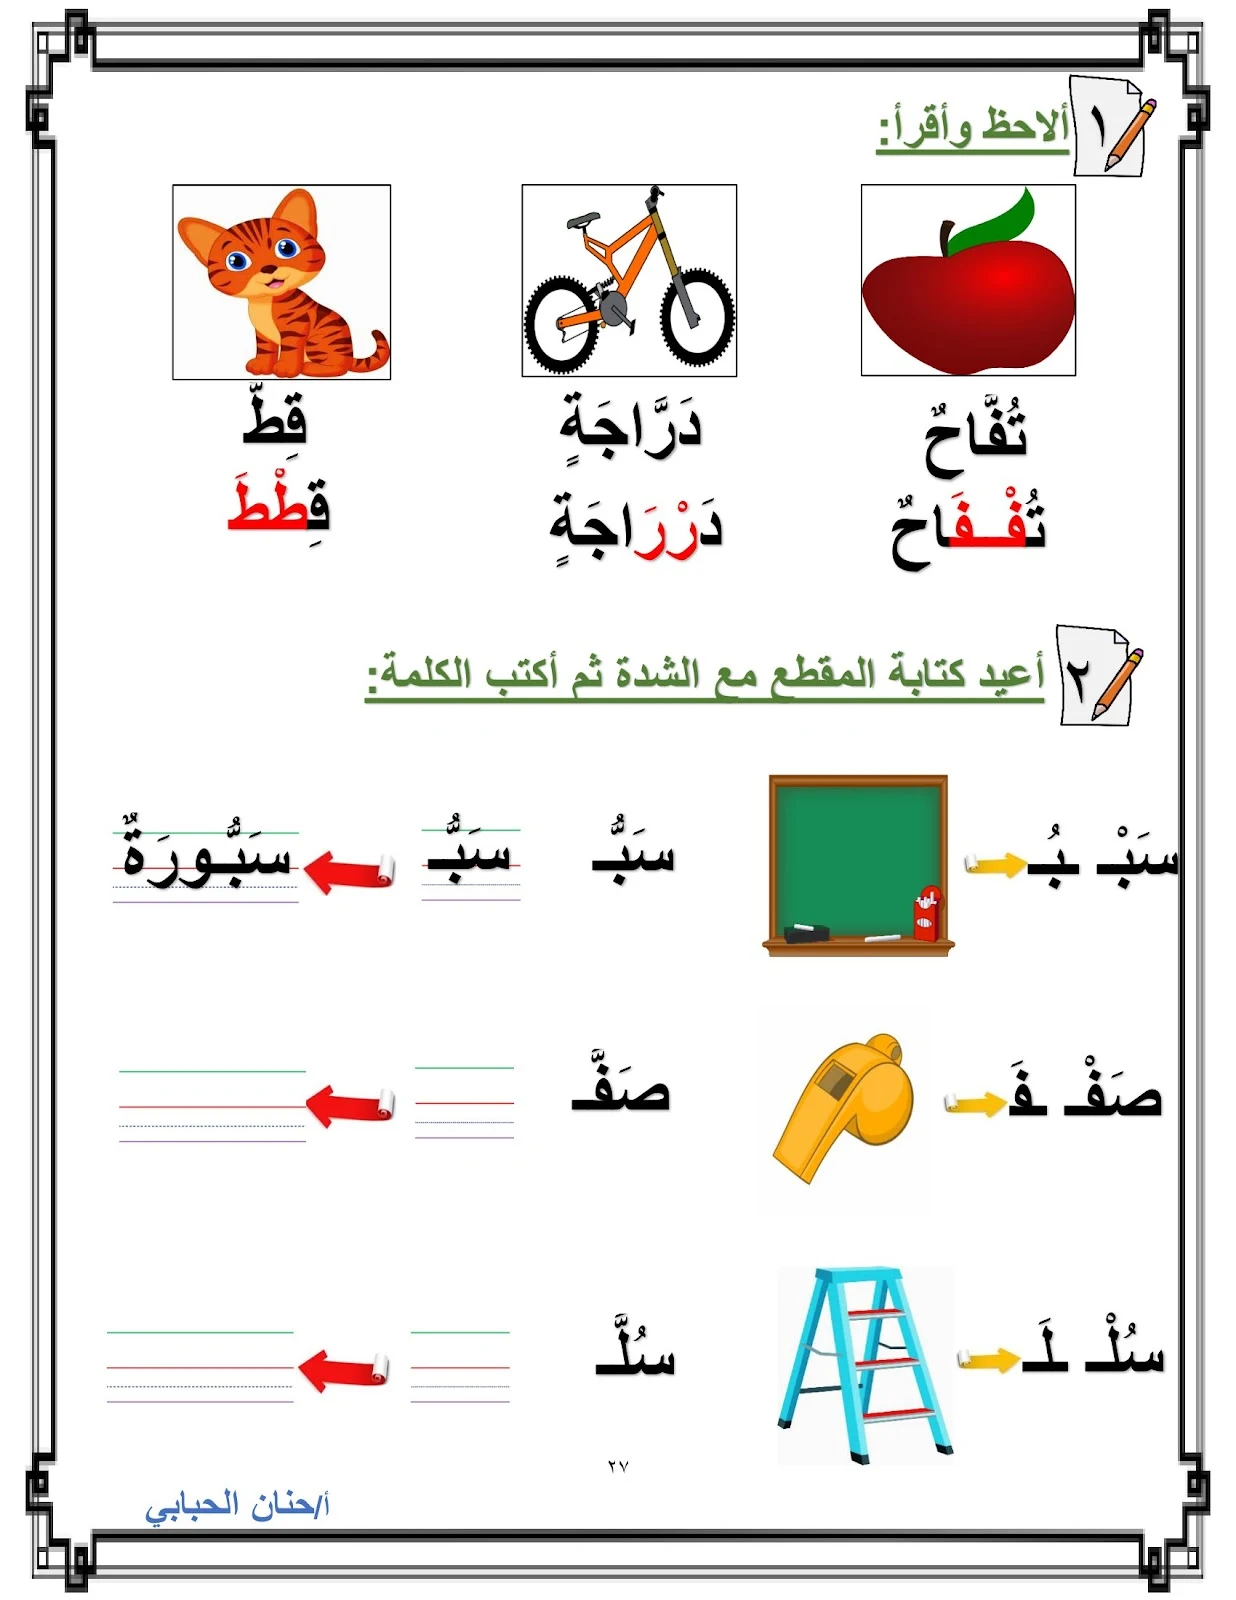 ملزمة إثراء الموسوعة العلميلة المقدمة لتعليم اللغة العربية برابط مباشر pdf